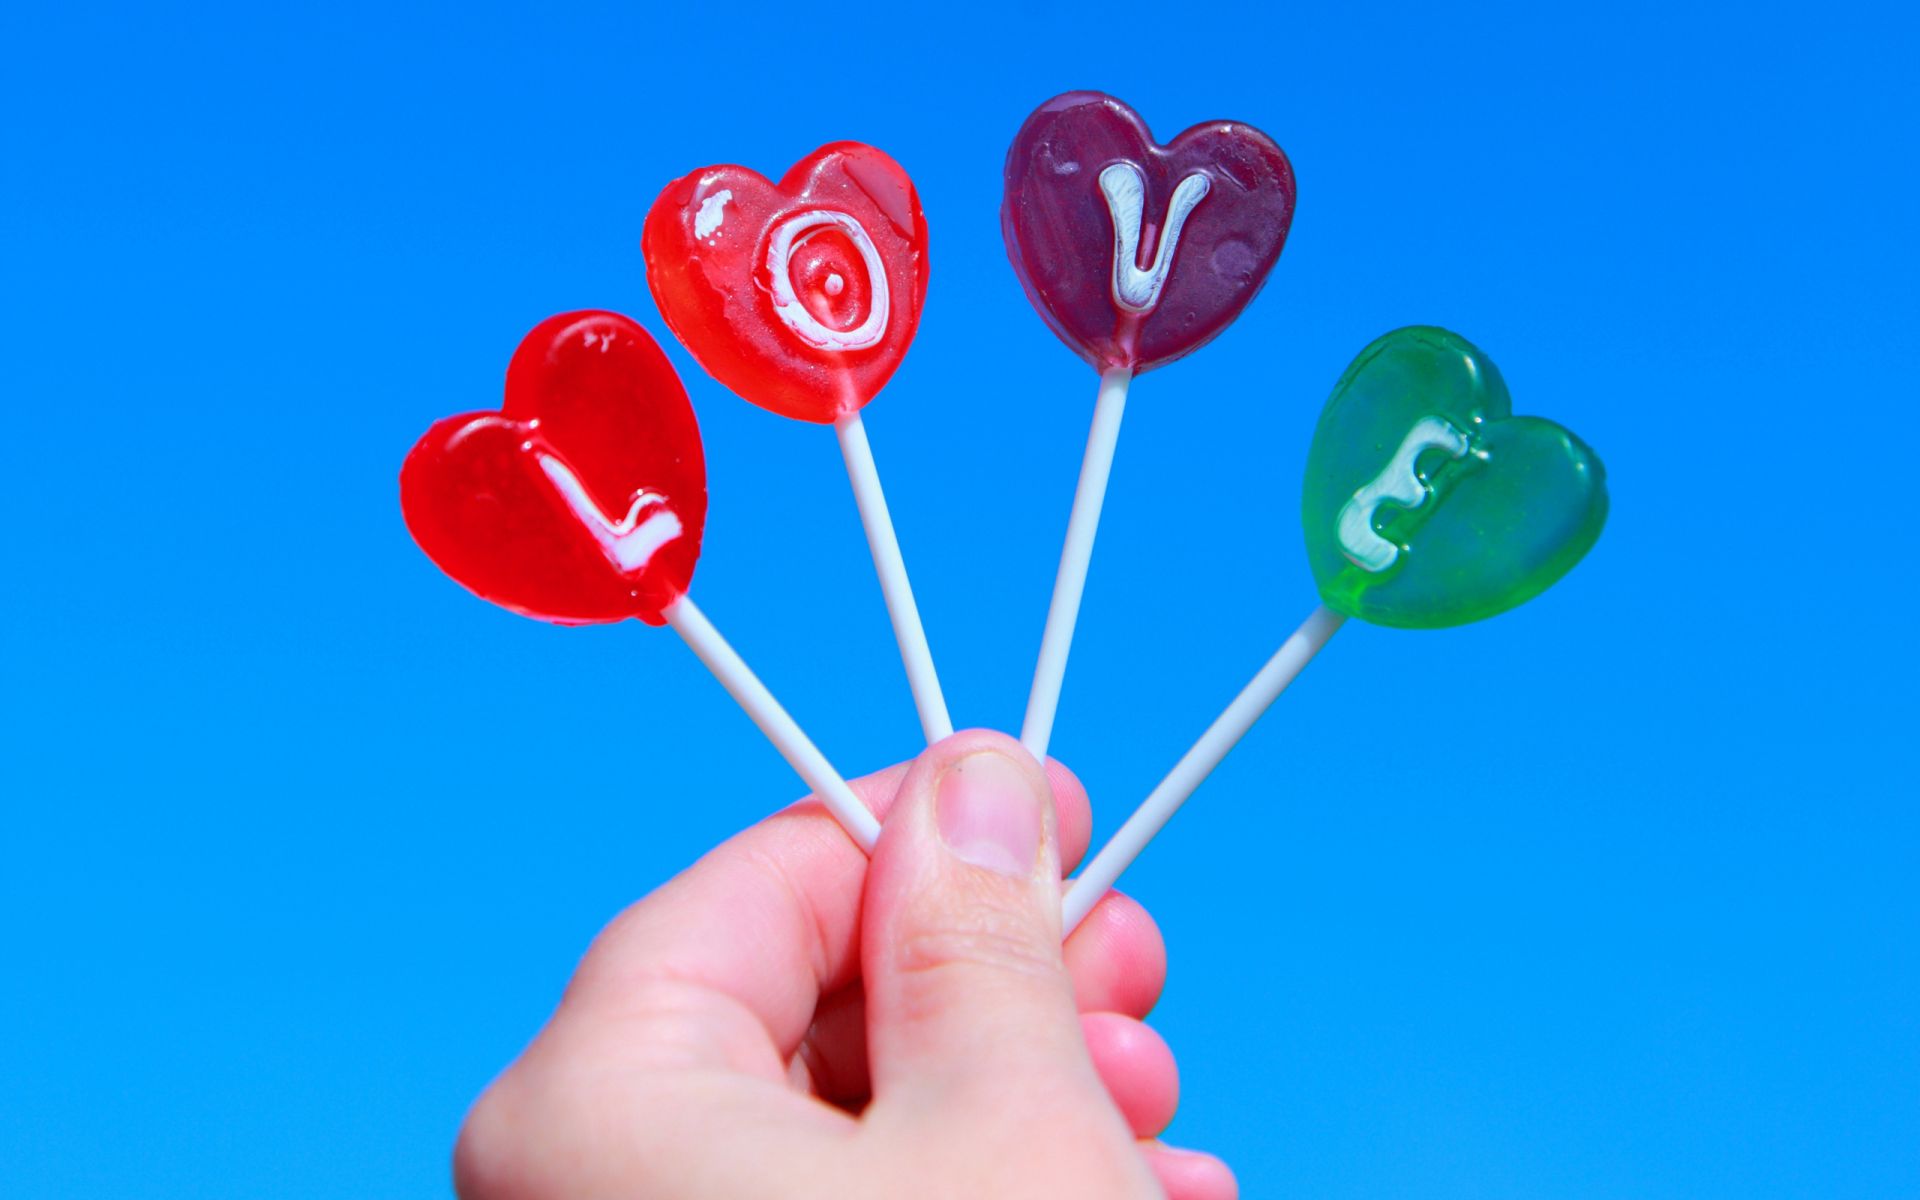 labels love desktop nature summer lollipop romance heart confection bright